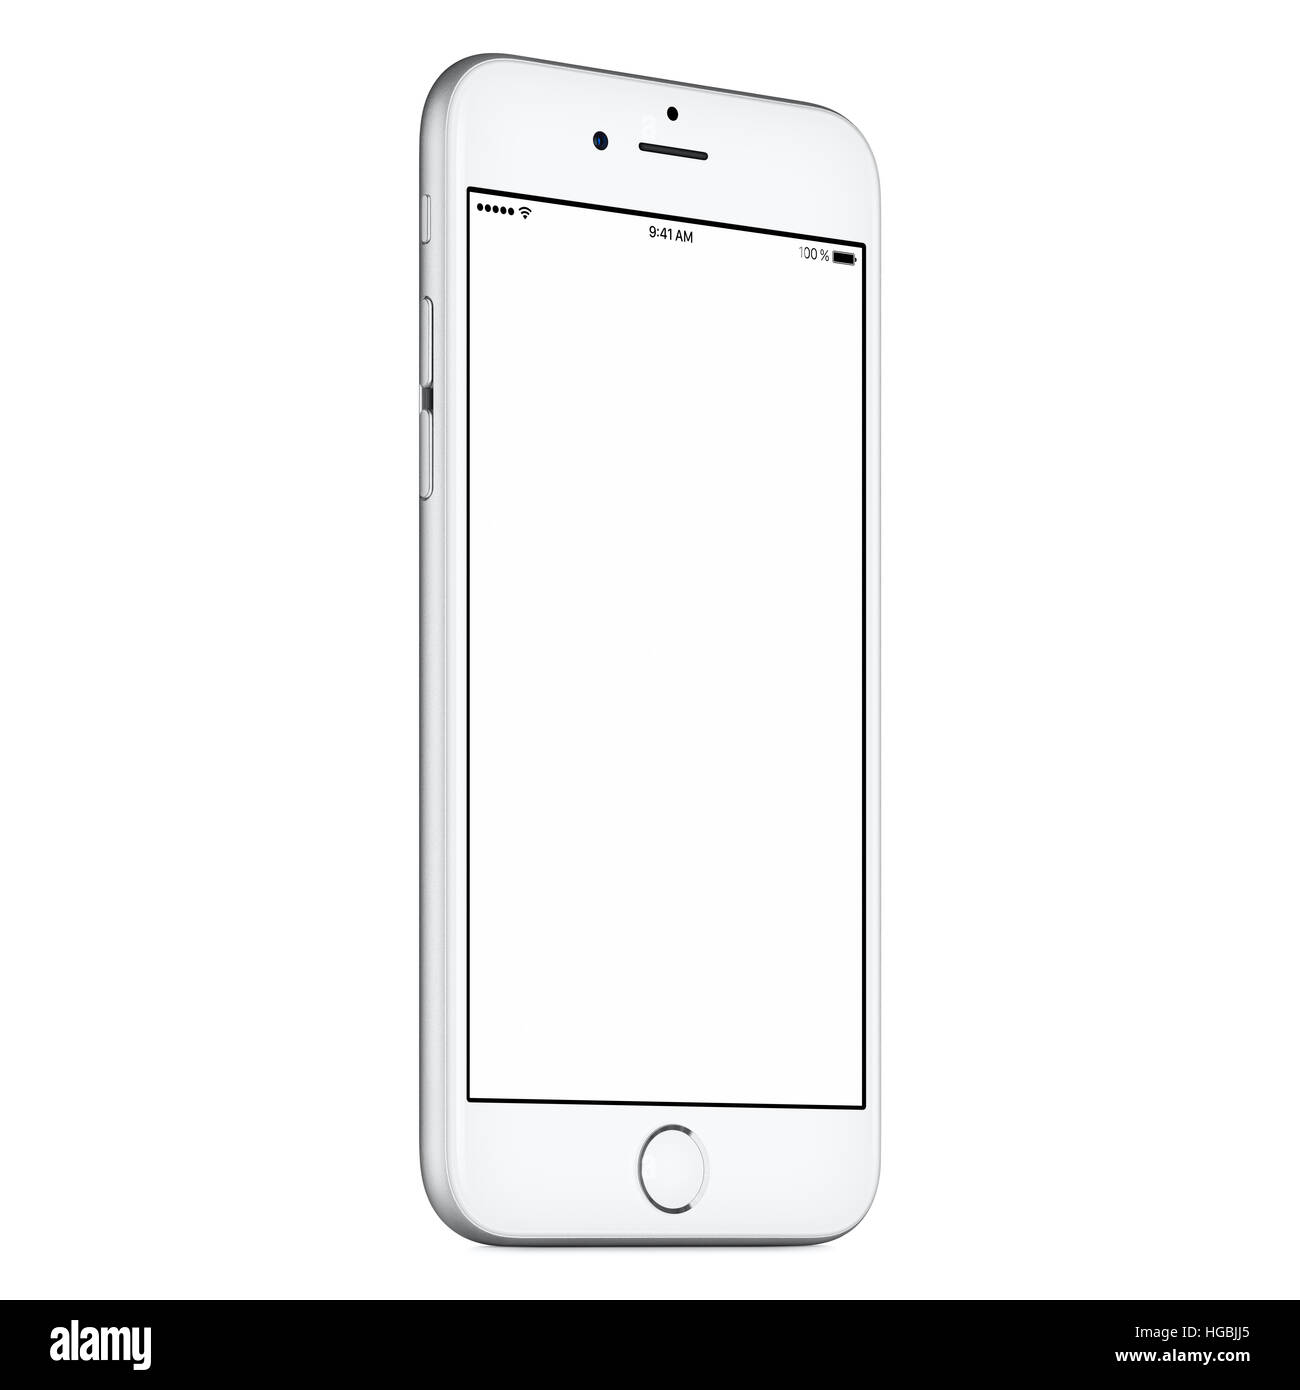 Weiße mobile Smartphone-Modell leicht gegen den Uhrzeigersinn gedreht mit unbelegten Schirm isoliert auf weißem Hintergrund. Stockfoto